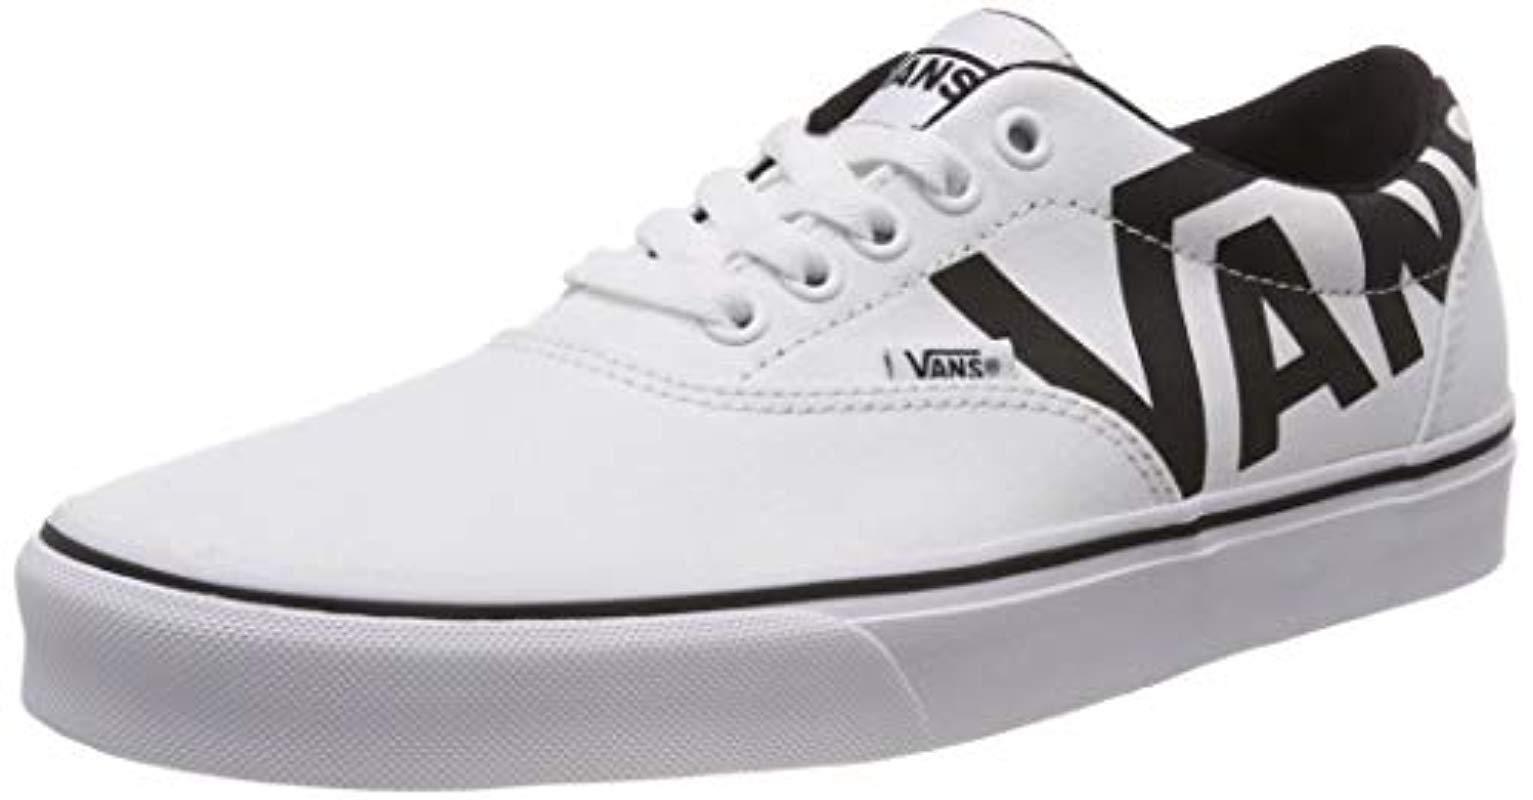 Big Vans Logo - Vans 's Doheny Big Logo Low-top Sneakers in White for Men - Lyst